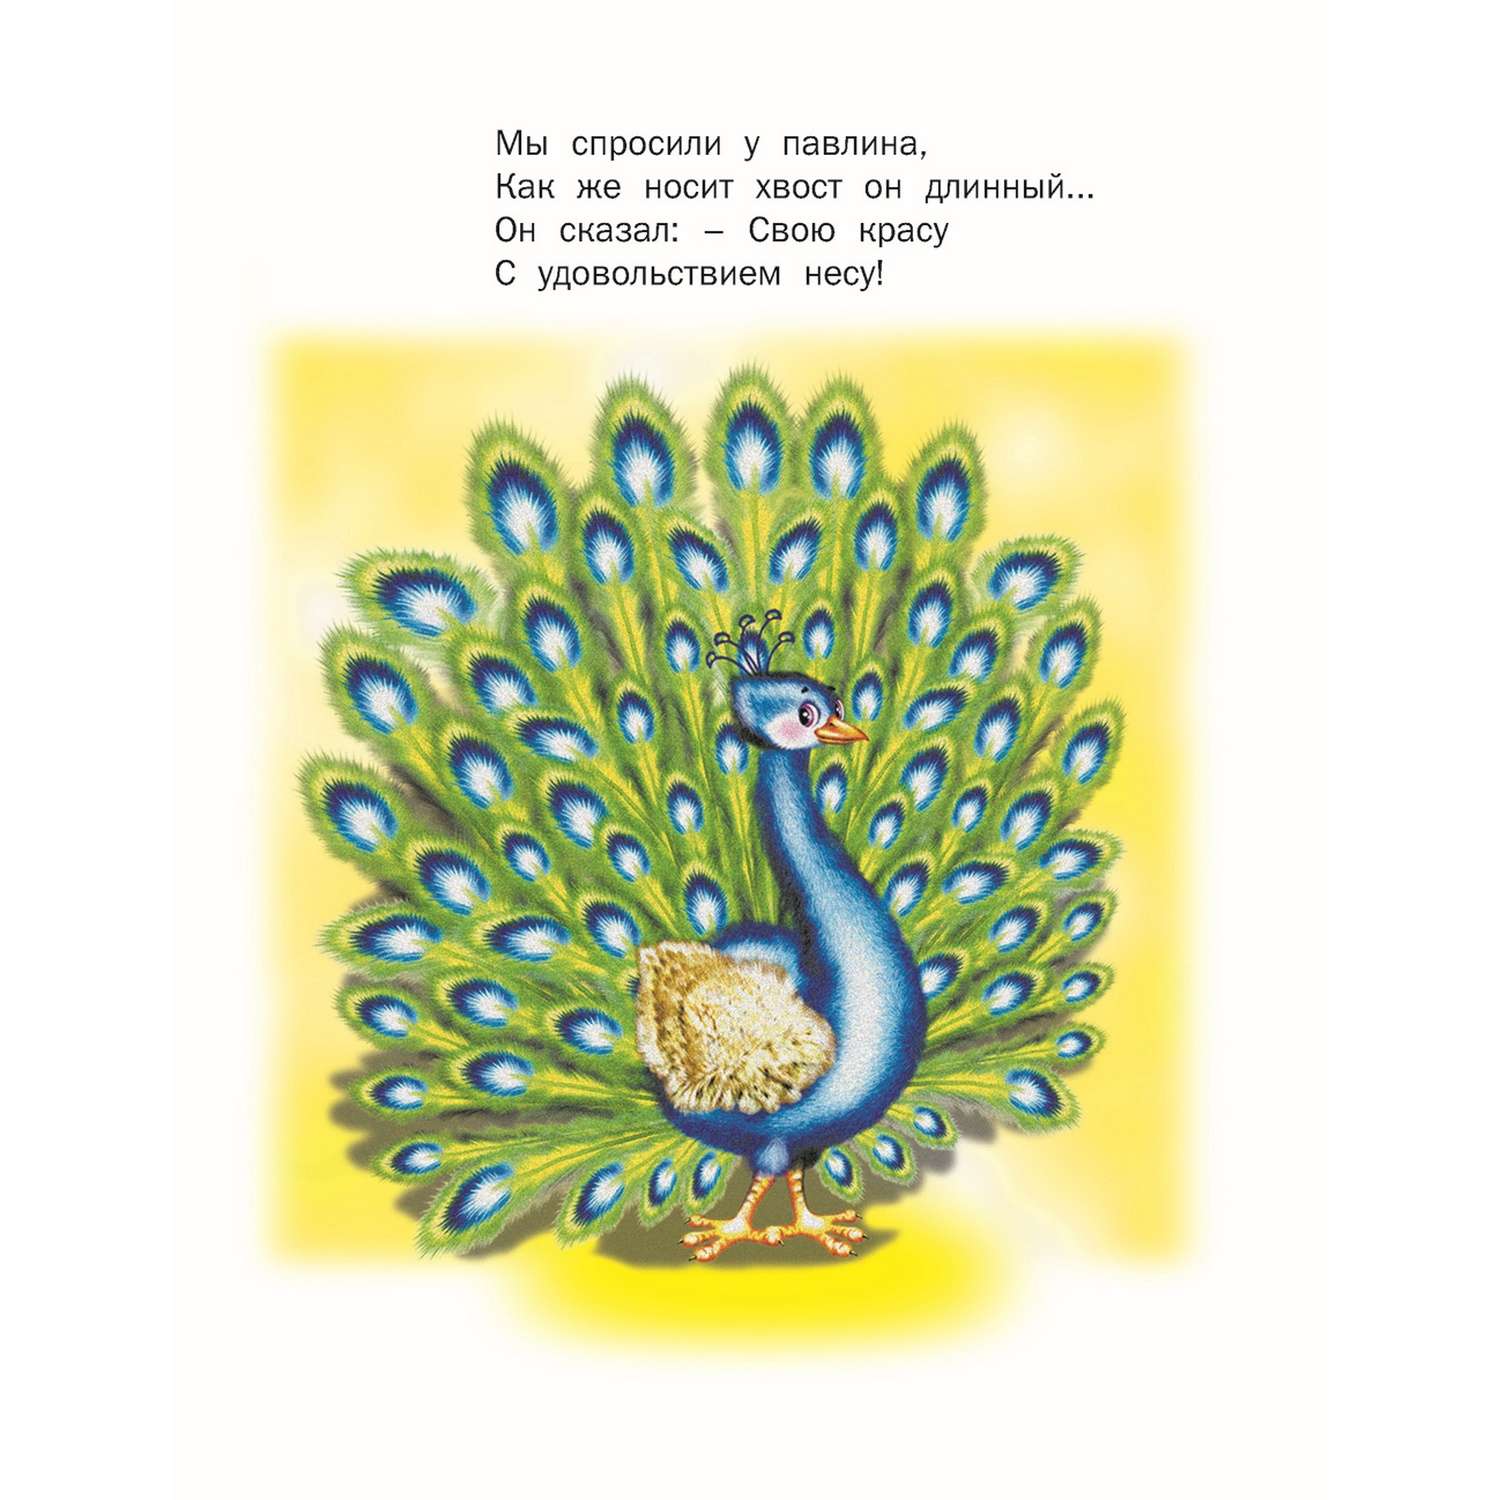 Книга Русич Птичьи секреты - фото 2